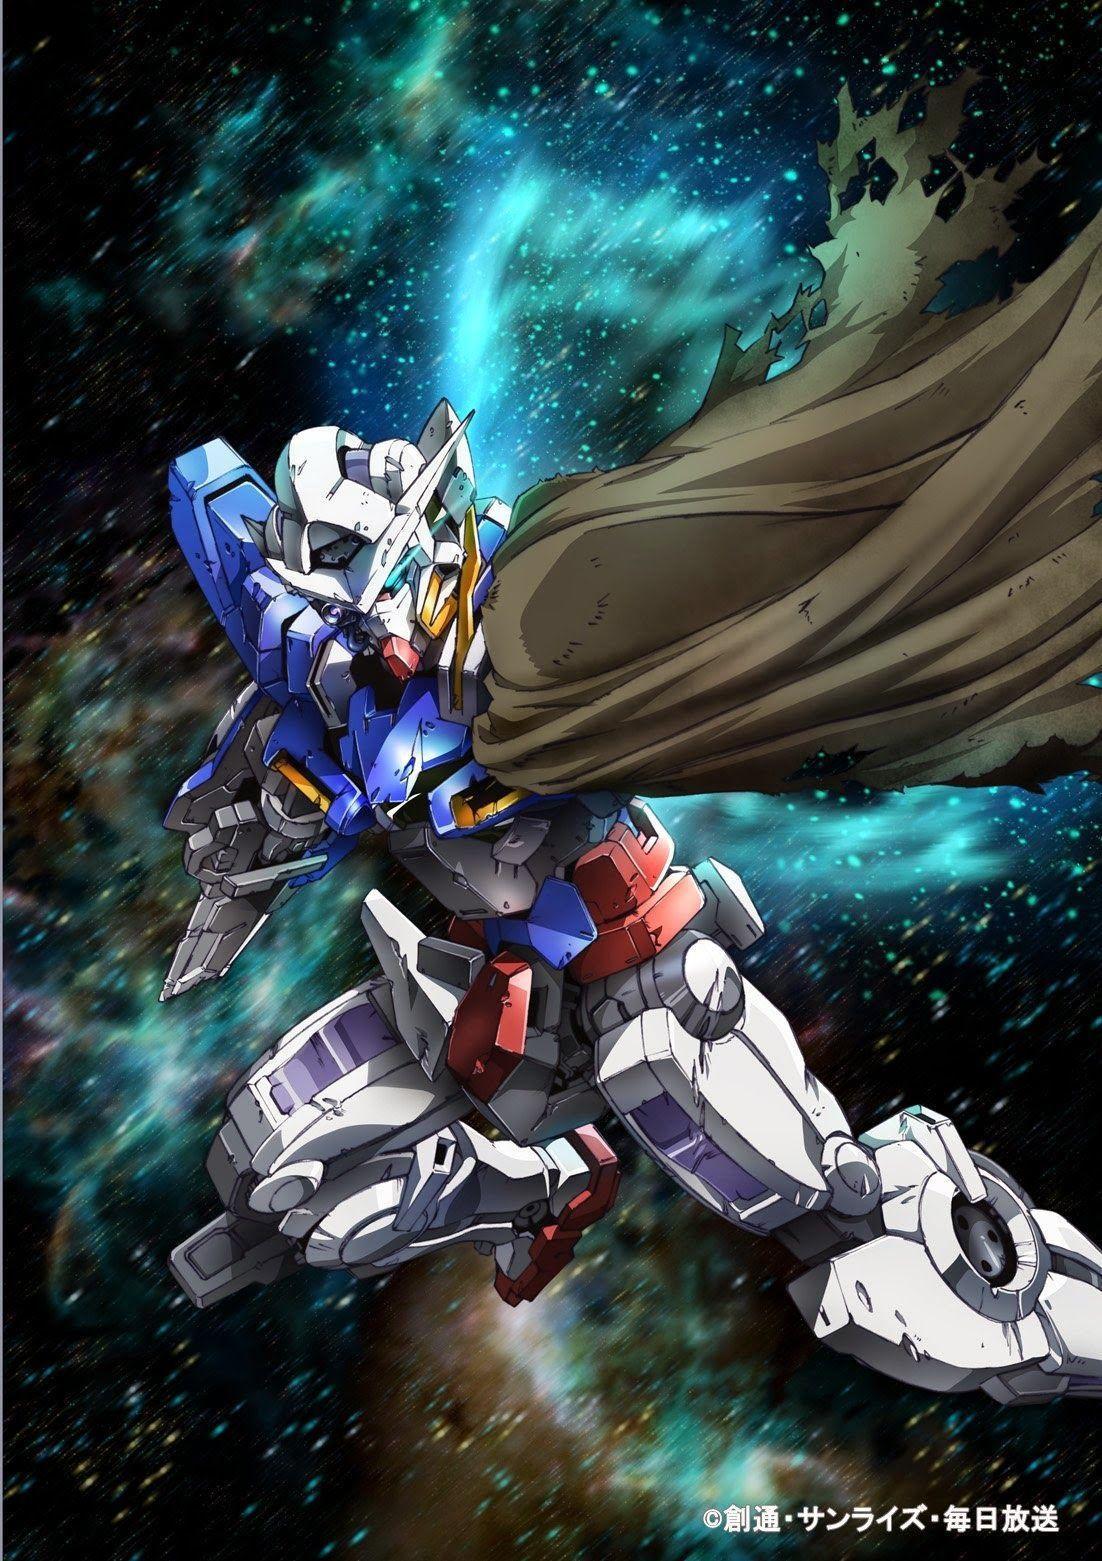 GN 001RE Gundam Exia Repair Wallpaper Poster Image Kits